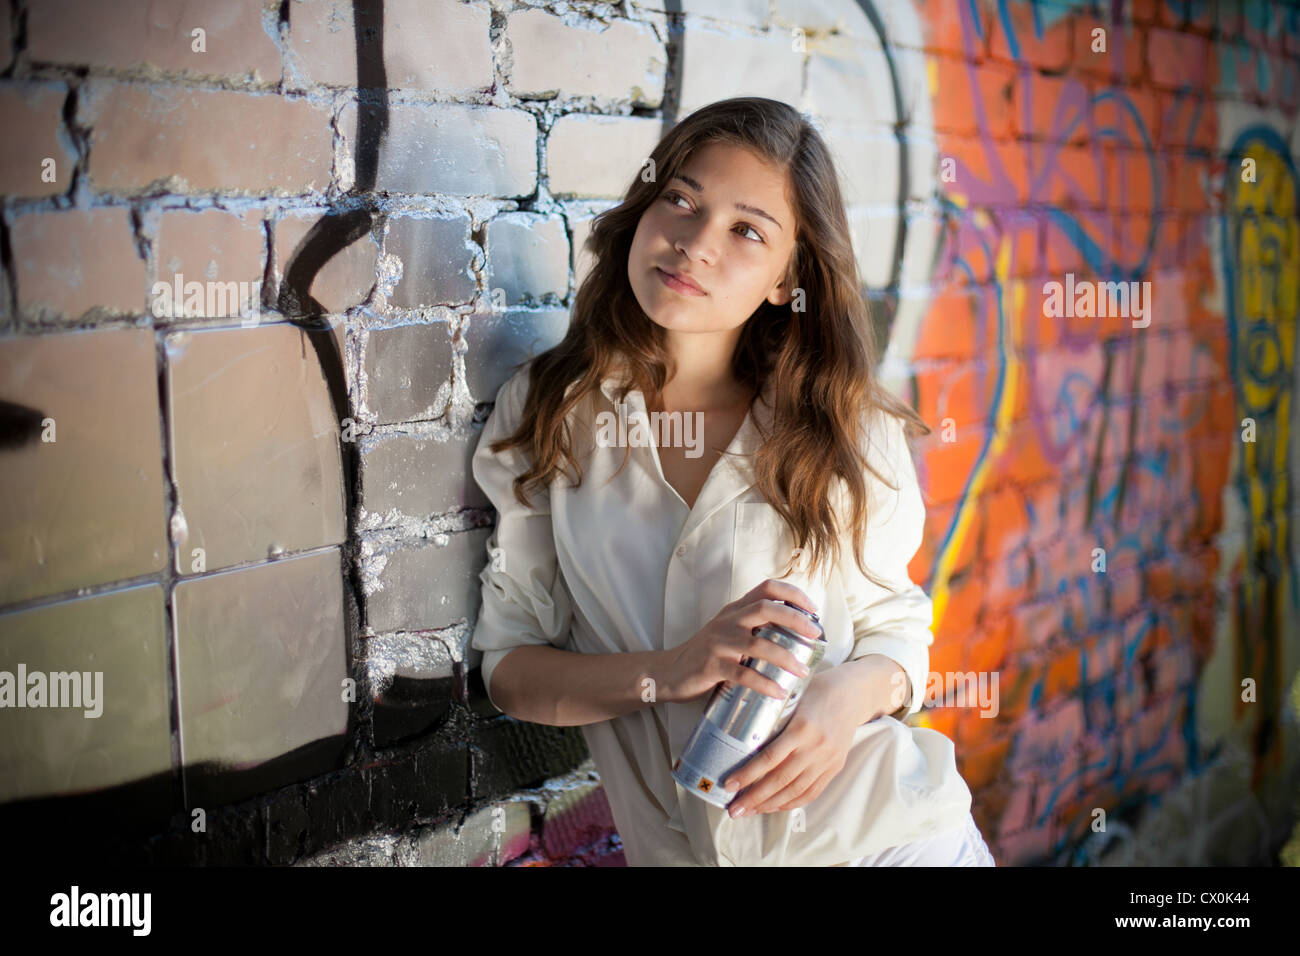 Teenager-Mädchen Porträt mit Spray kann Graffitiwand in der Nähe. Stockfoto